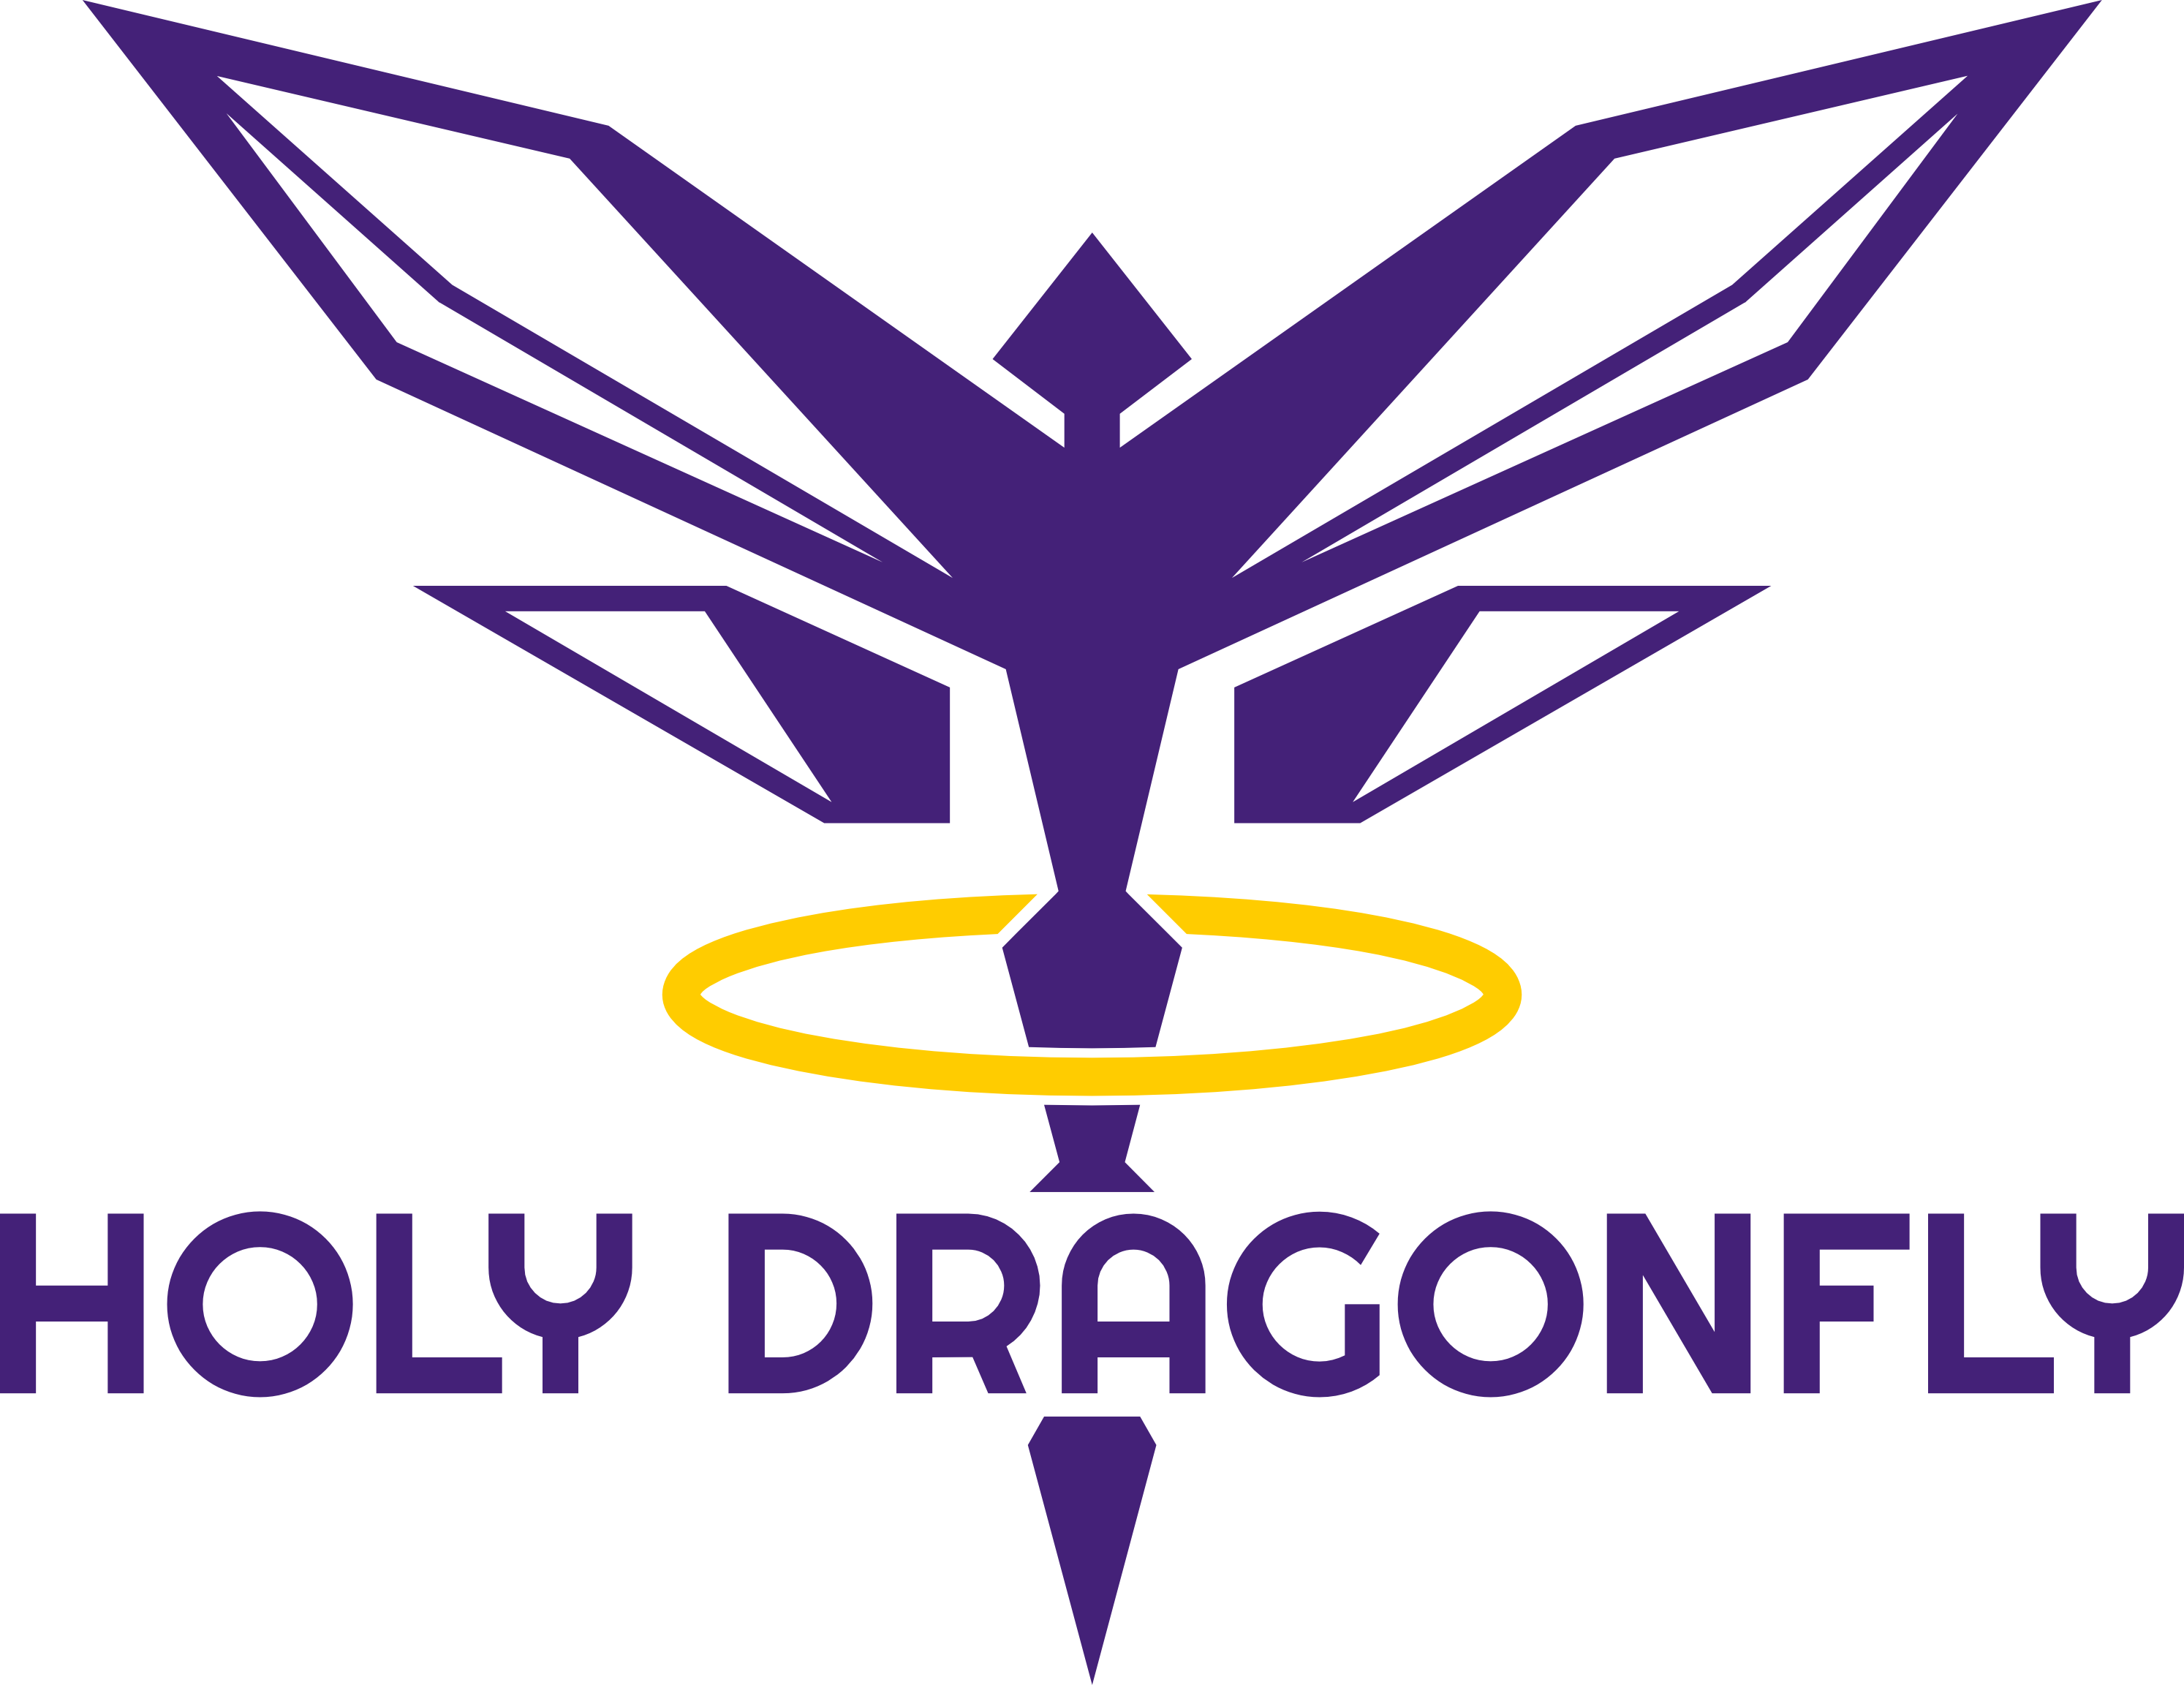 www.holydragonfly.com